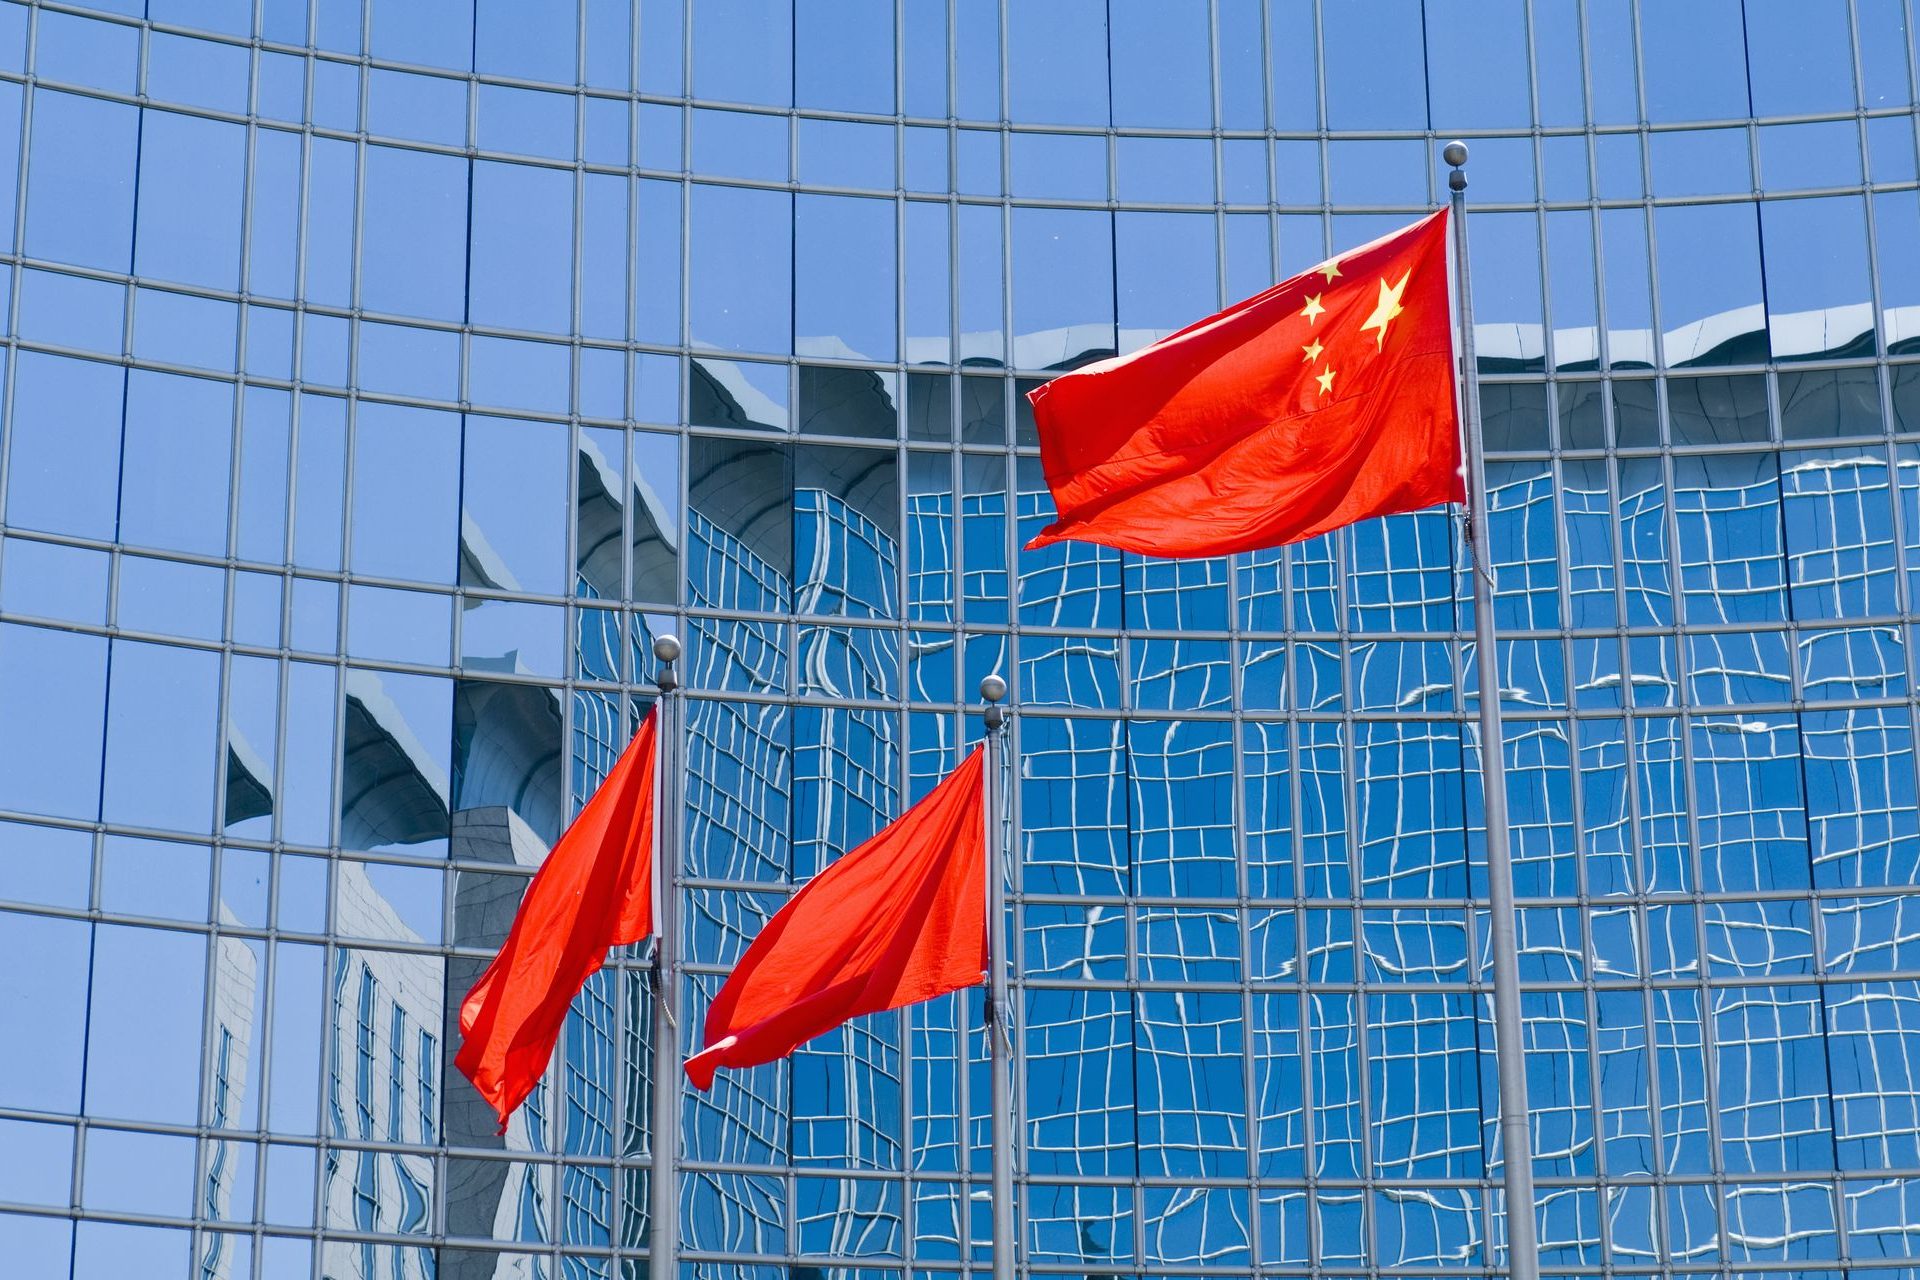 Répression politique et campagnes nationalistes en ligne : vers une deuxième révolution culturelle en Chine ?